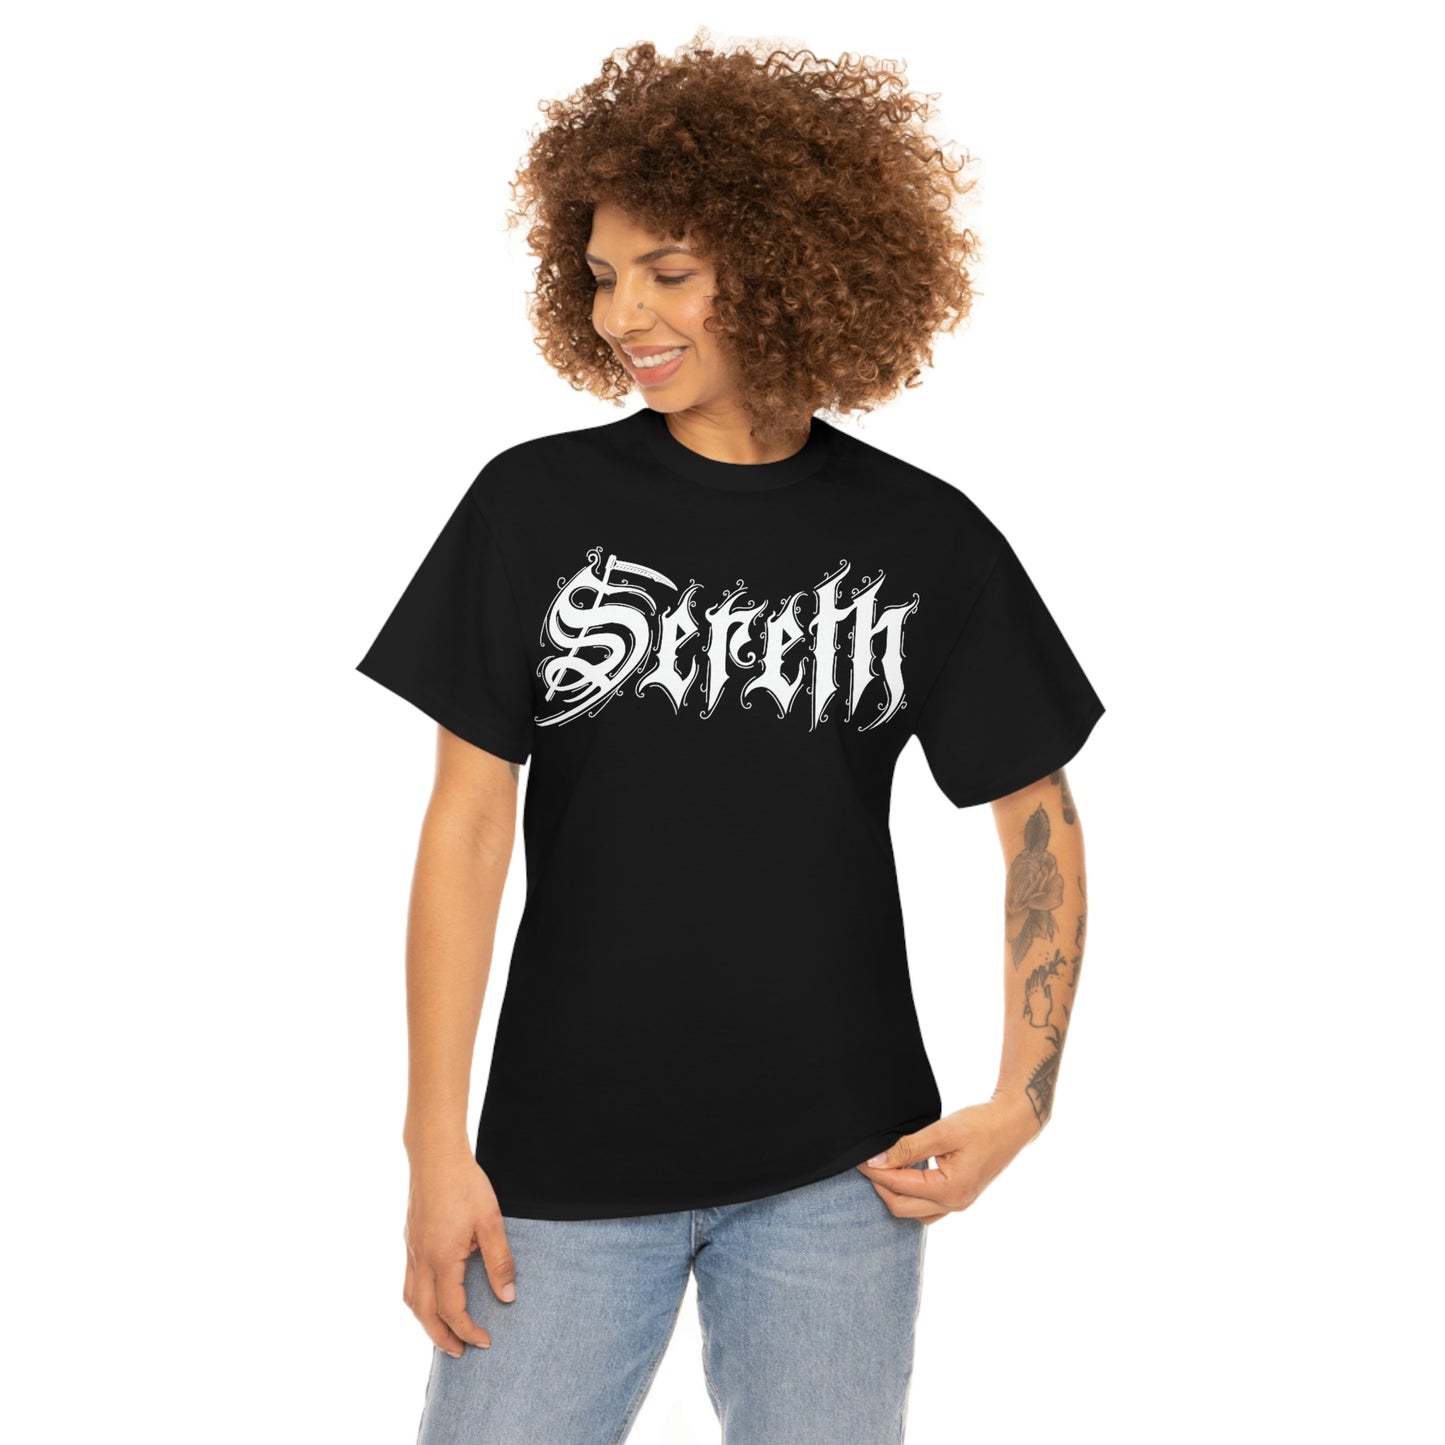 Sereth - Logo w/design (UK)